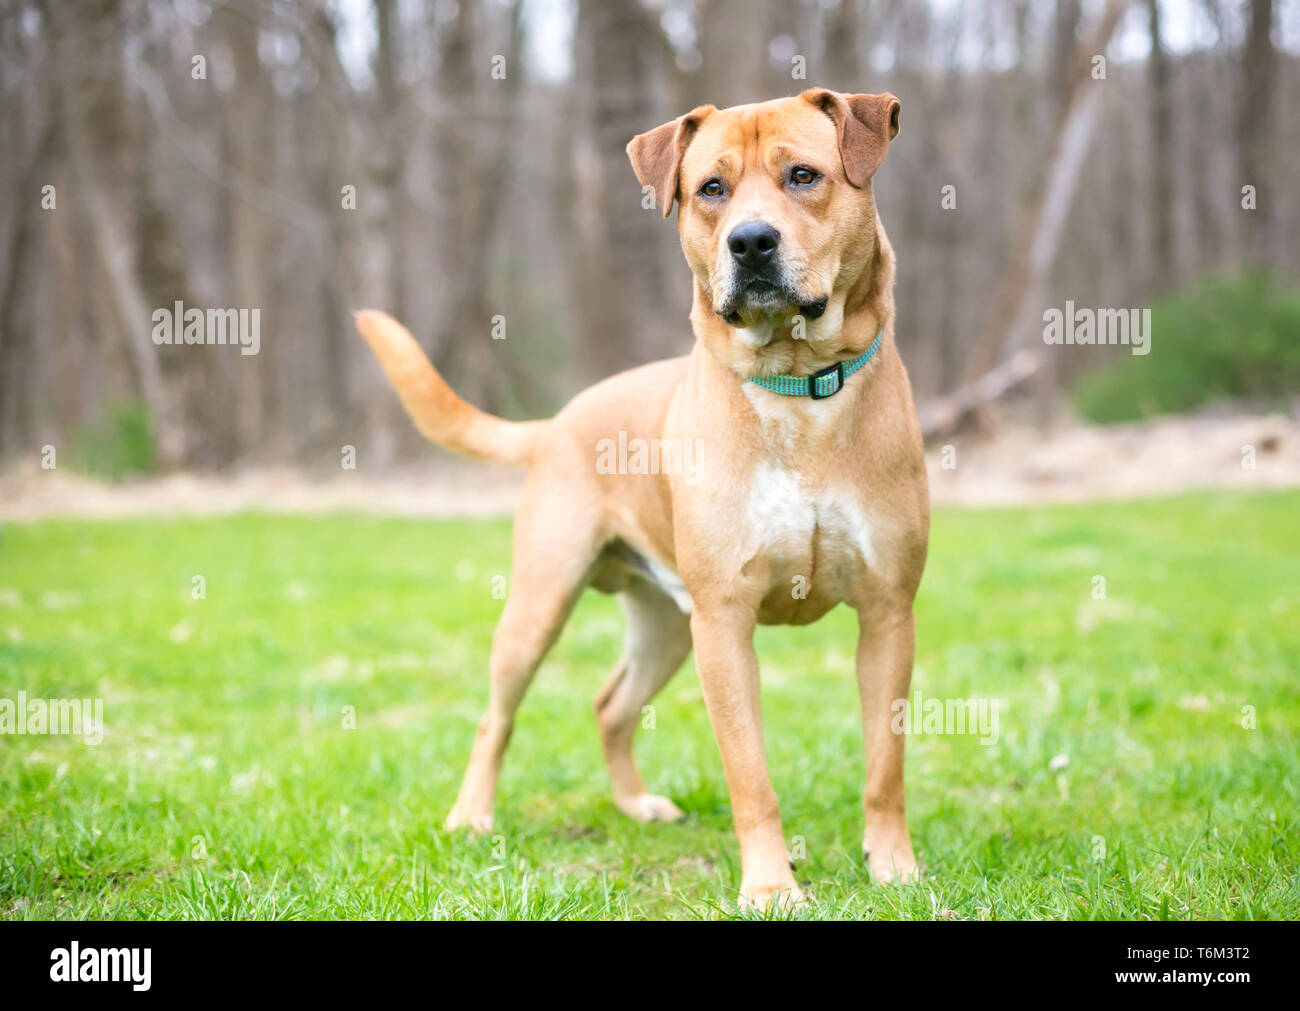 A Labrador Retriever mixed breed dog standing outdoors Stock Photo